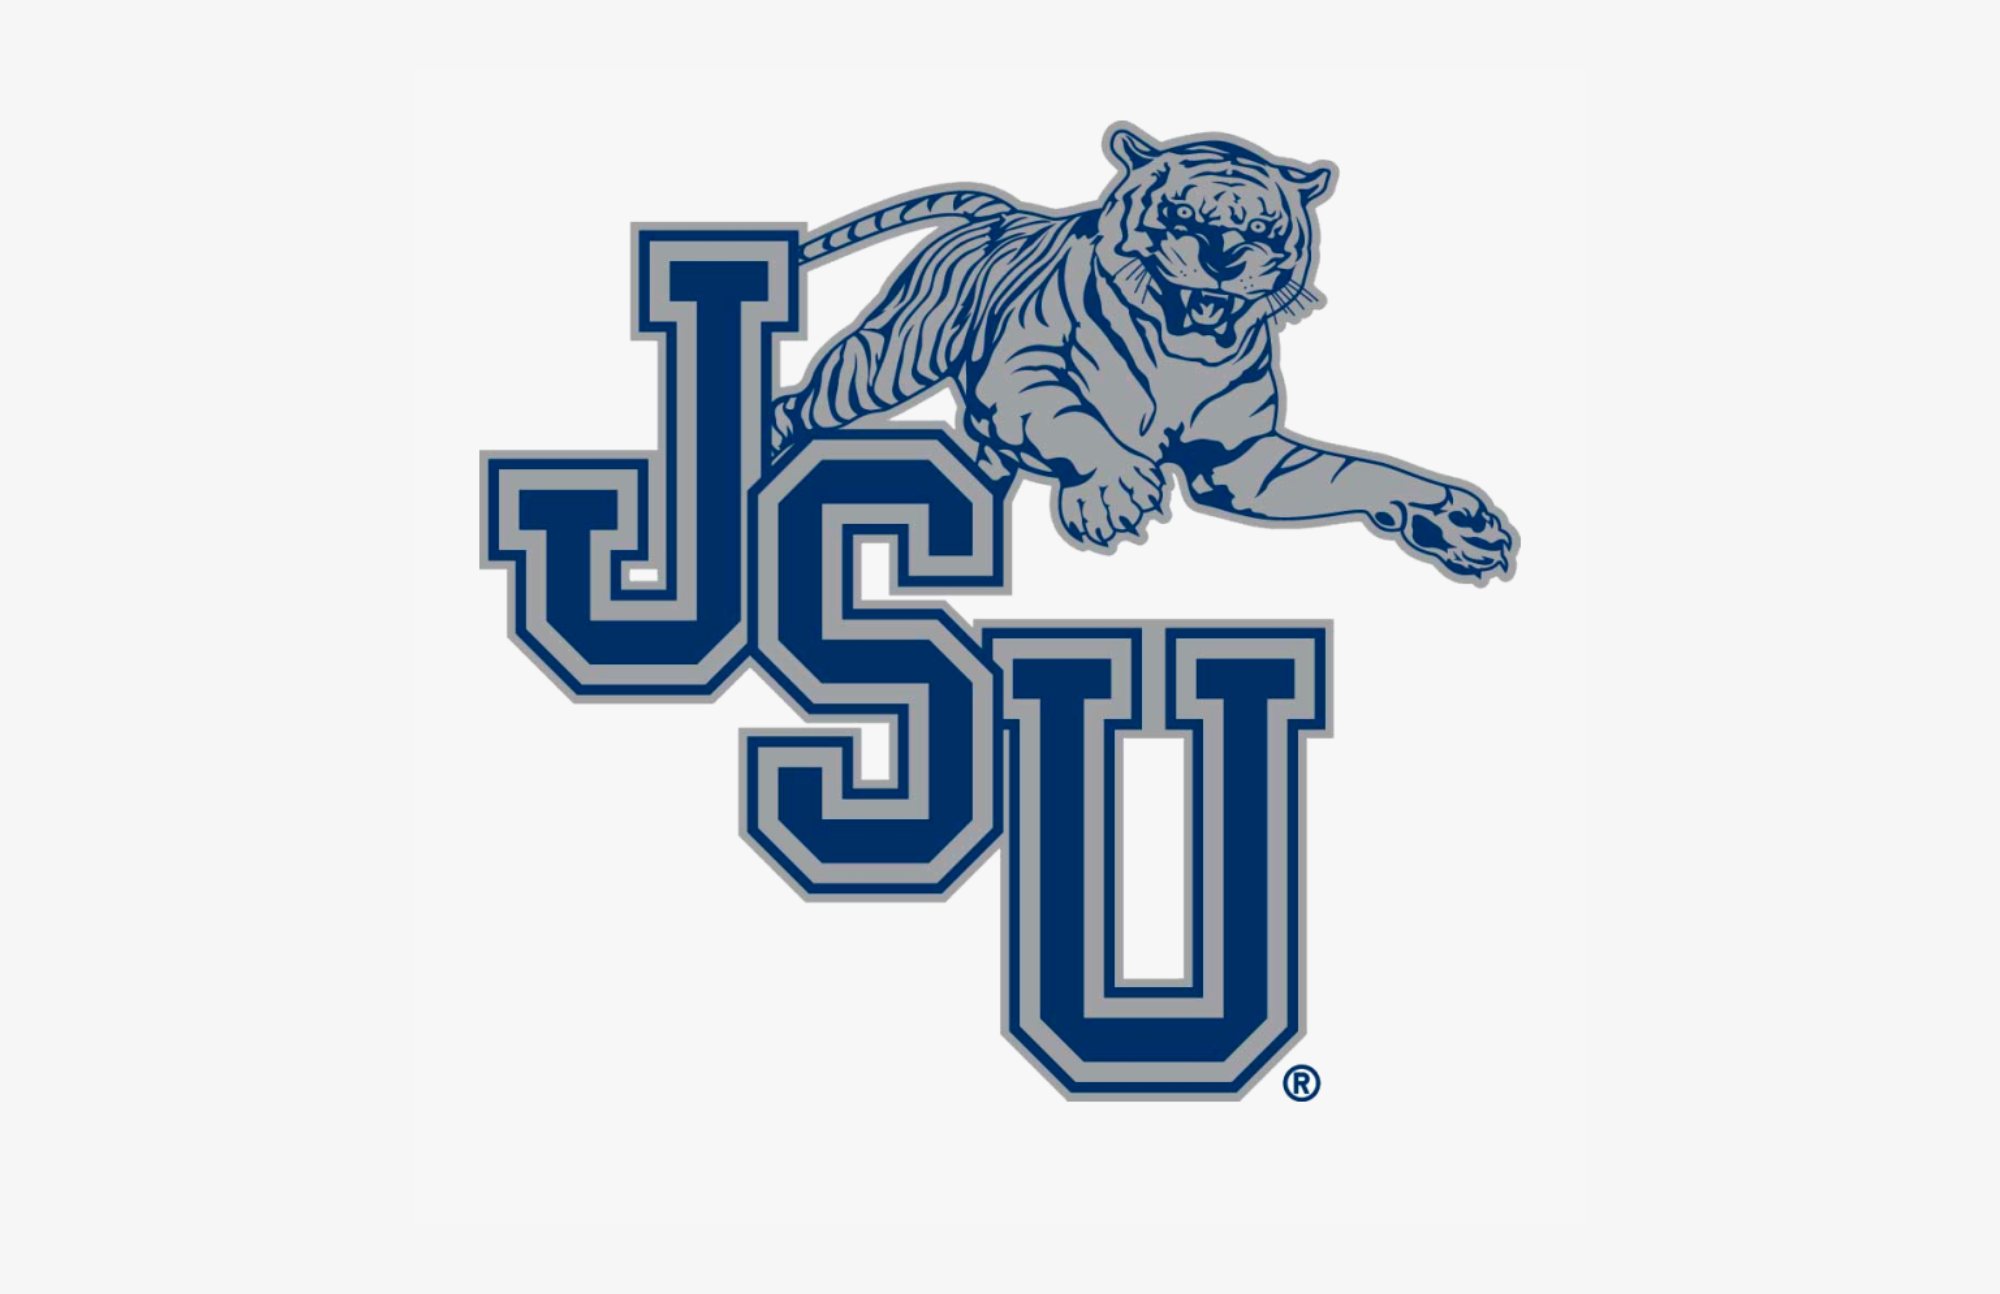 JSU logo and cat mascot